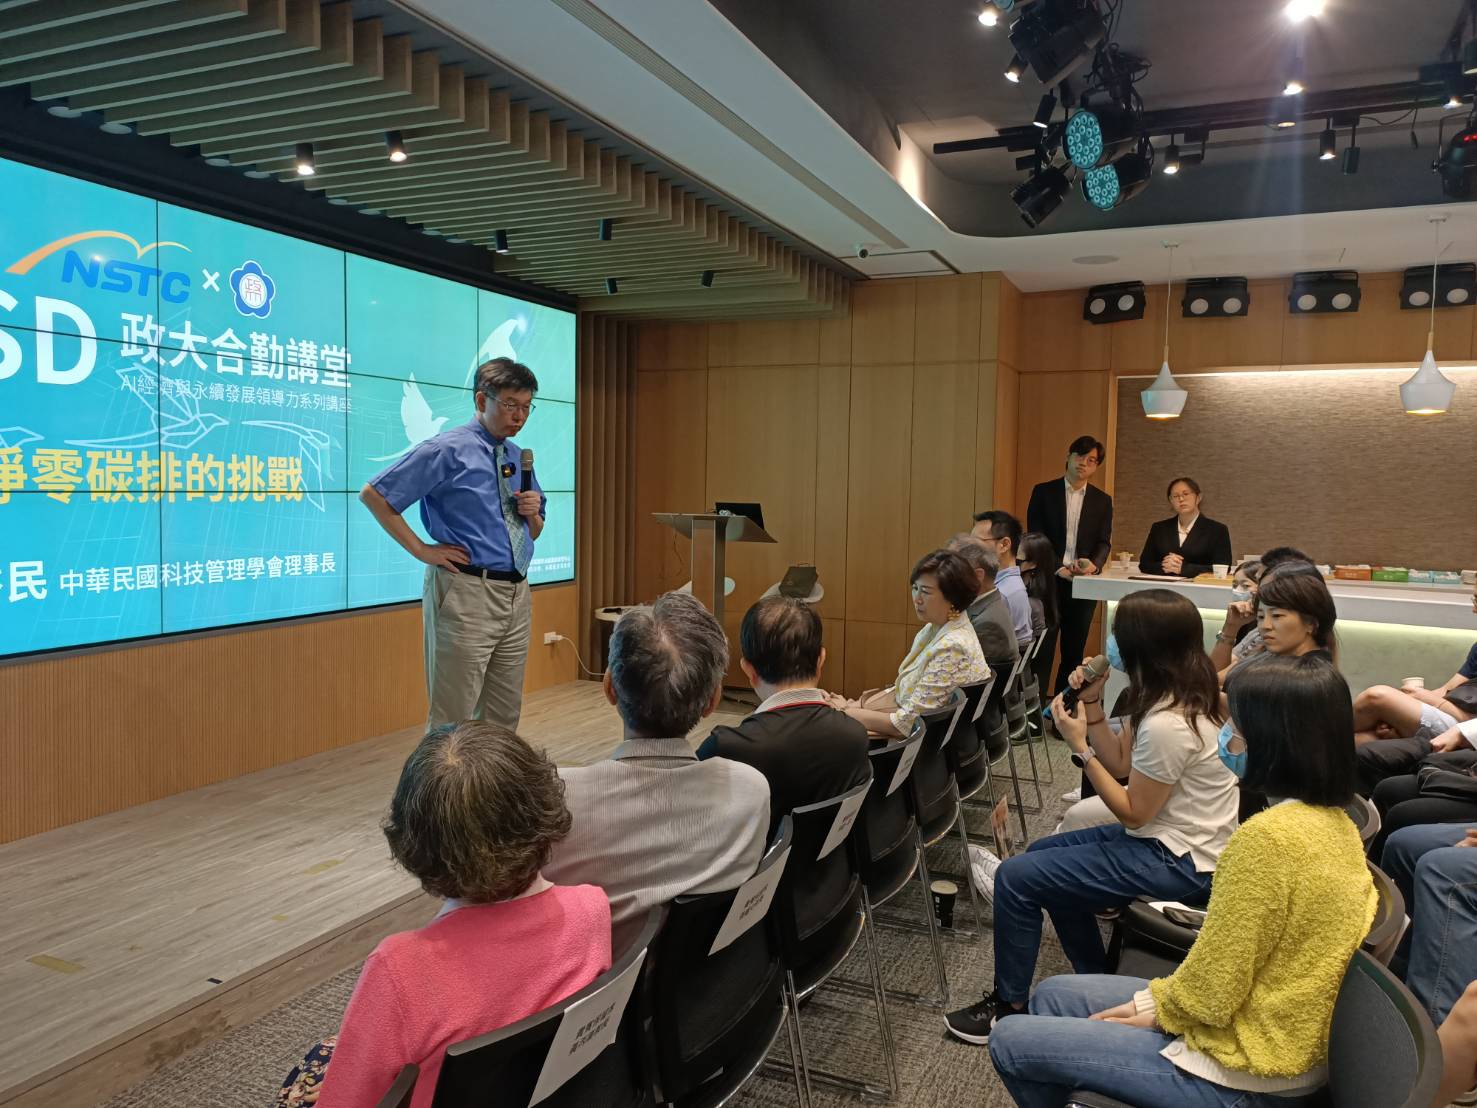 中華民國科技管理學會理事長彭裕民(站立者)與聽眾熱烈討論淨零碳排問題。圖/簡立欣攝